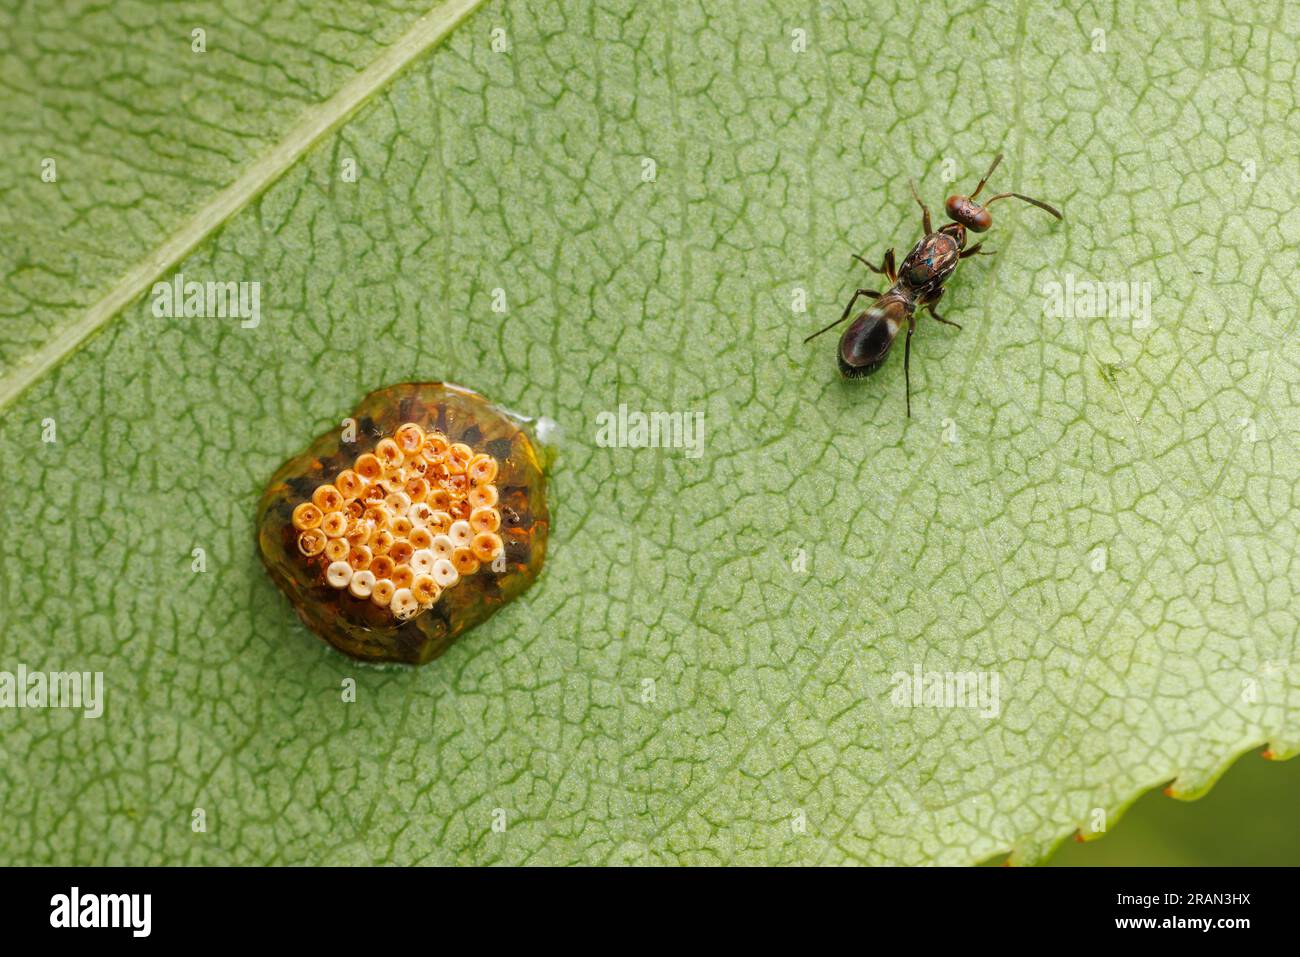 Eine weibliche Eupelmid Wasp (Anastatus sp.) Auf einem Blatt mit einem Assassinenkäfer (Zelus sp.) Eiermasse. Anastus sp. Sind dafür bekannt, Hemiptera-Eier zu parasitieren. Stockfoto